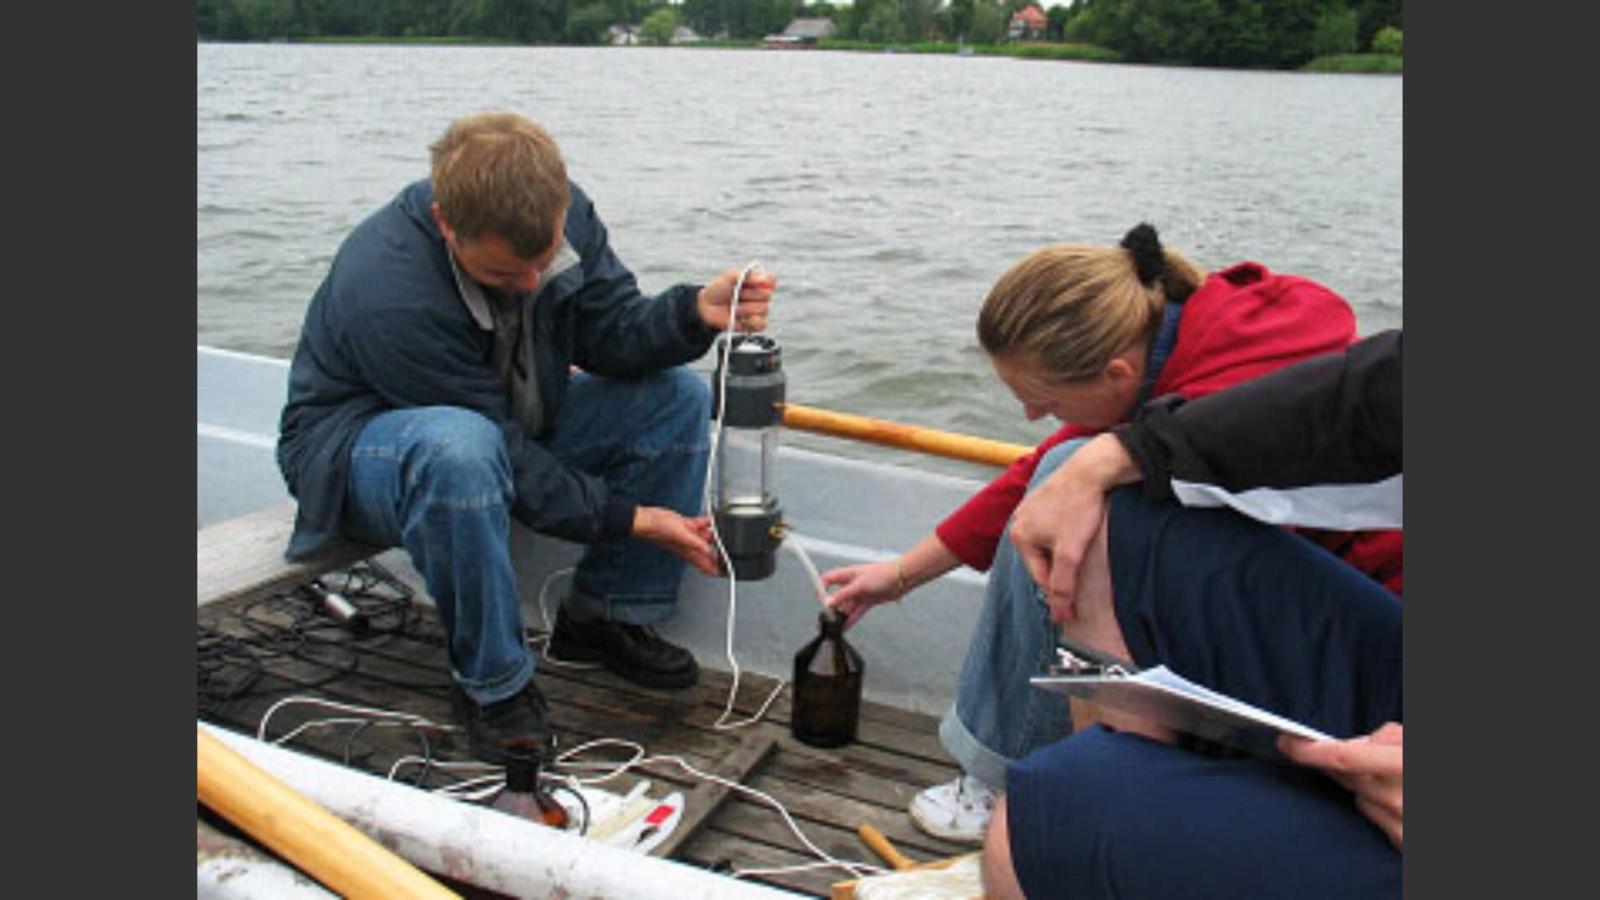 Mitarbeitende des Studienprojekts sitzen in einem Boot auf dem See und führen eine Wasseranalyse durch